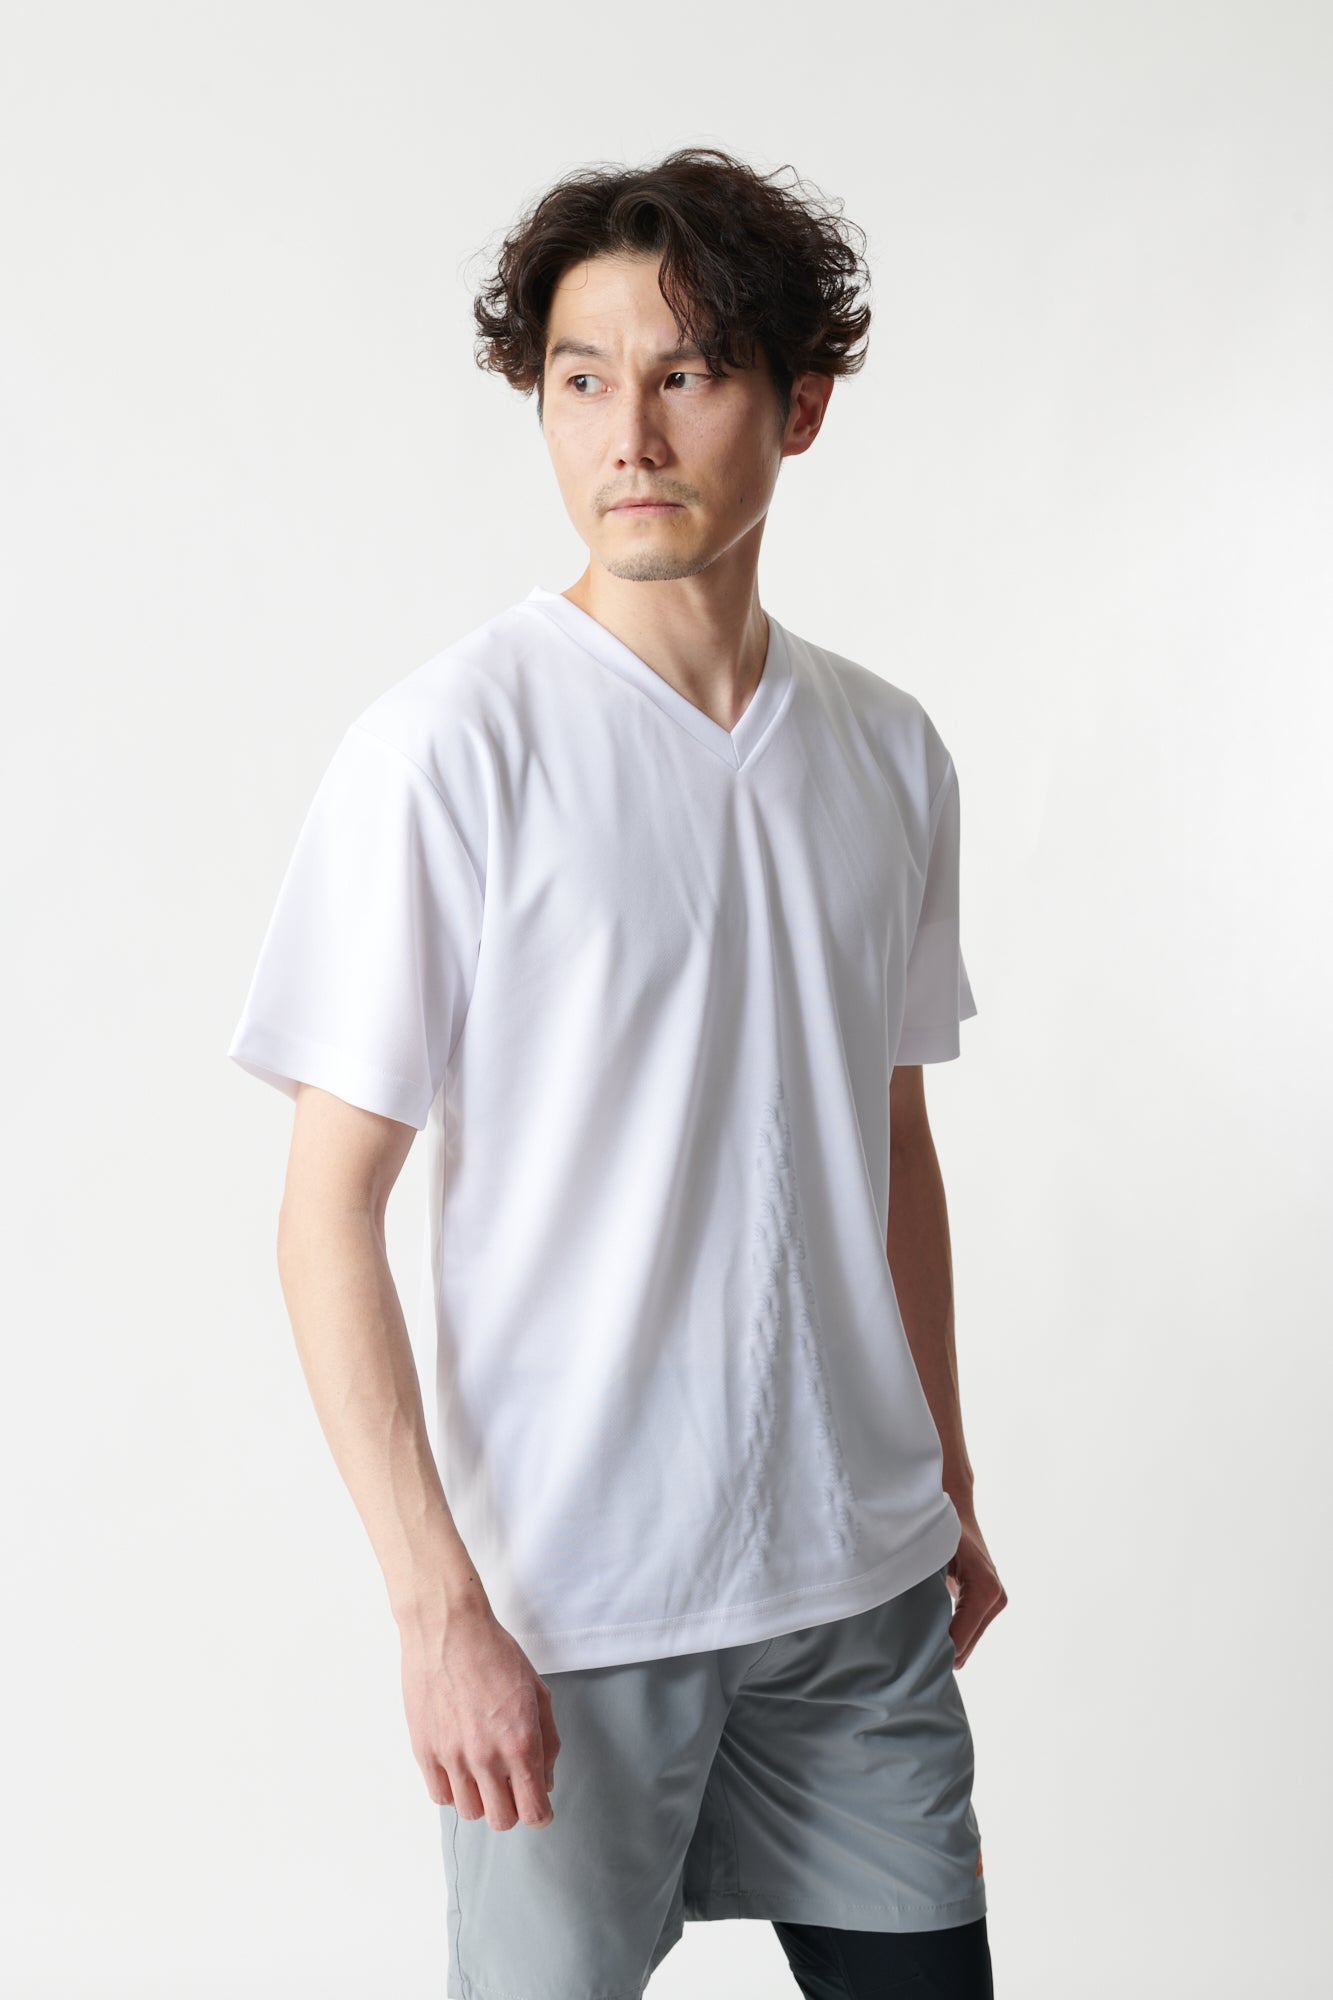 スポーツウェア リライブシャツ メンズ 白, 3L身長:180cm～ - Tシャツ 